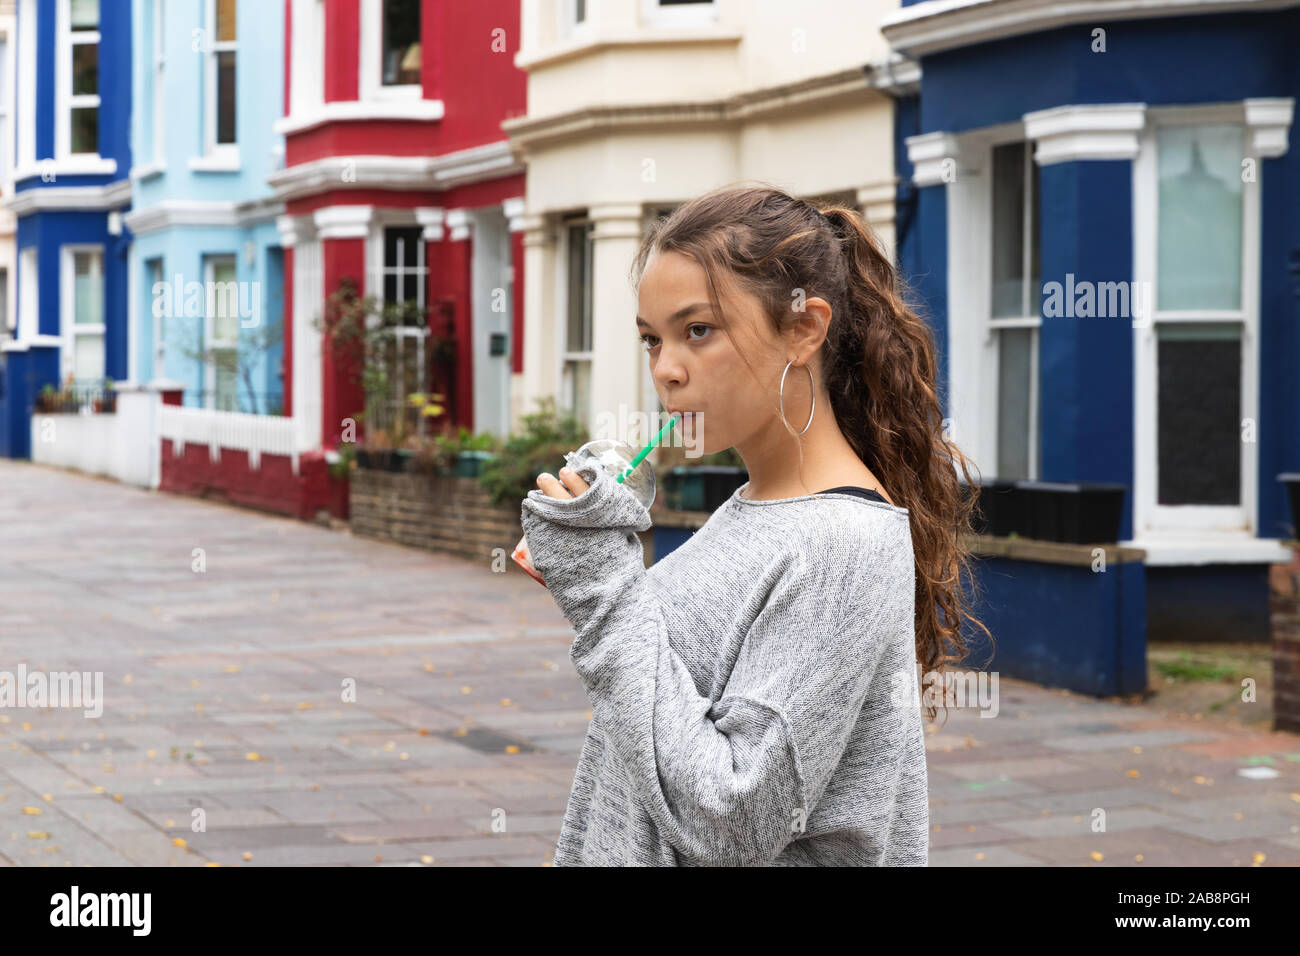 Ritratto ragazza giovane con un smoothie in mano in un contesto cittadino. Foto Stock